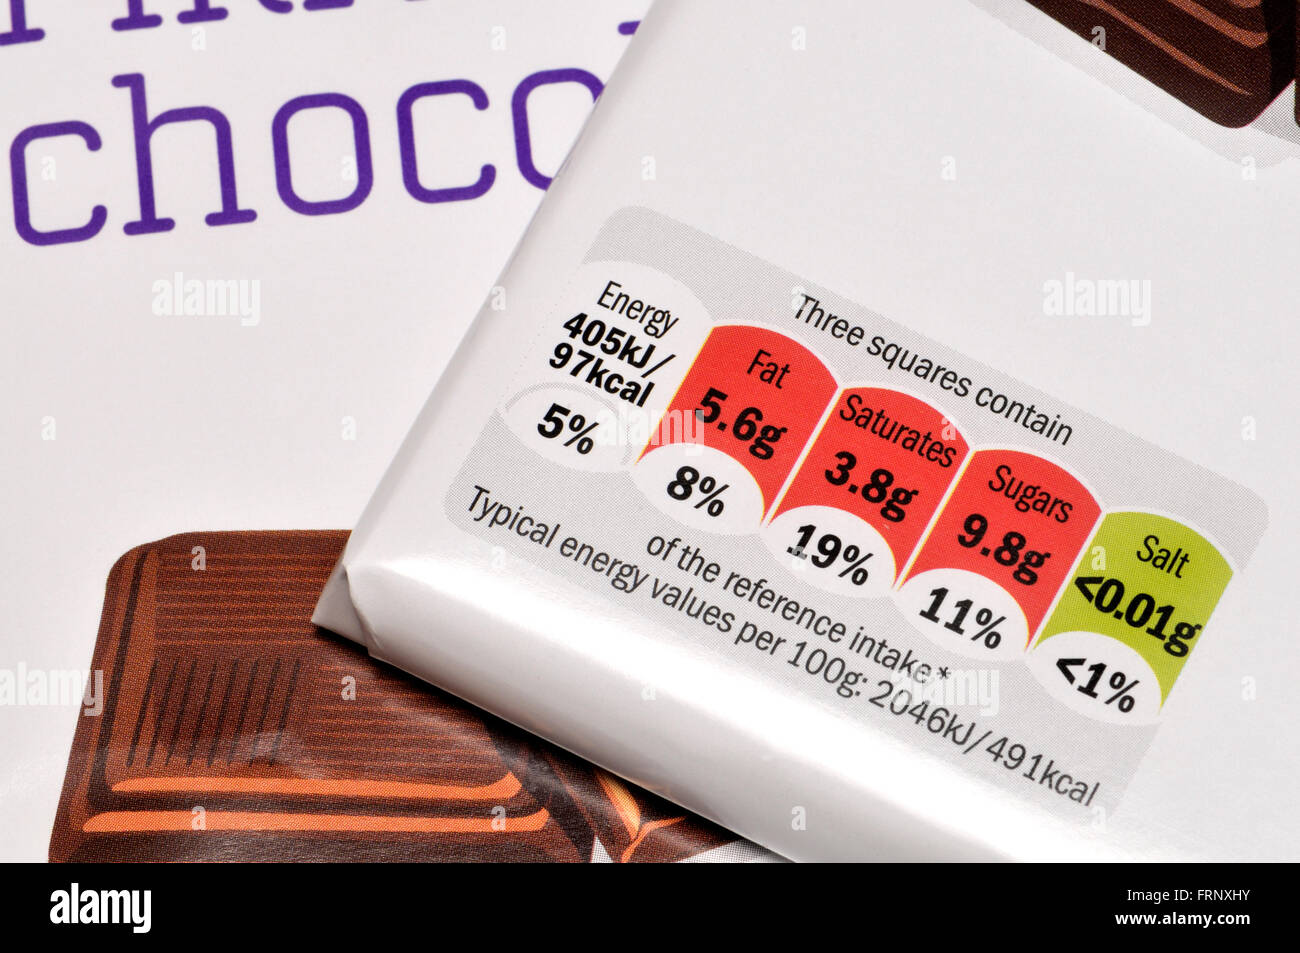 Barra de chocolate wrappers mostrando información nutricional Foto de stock